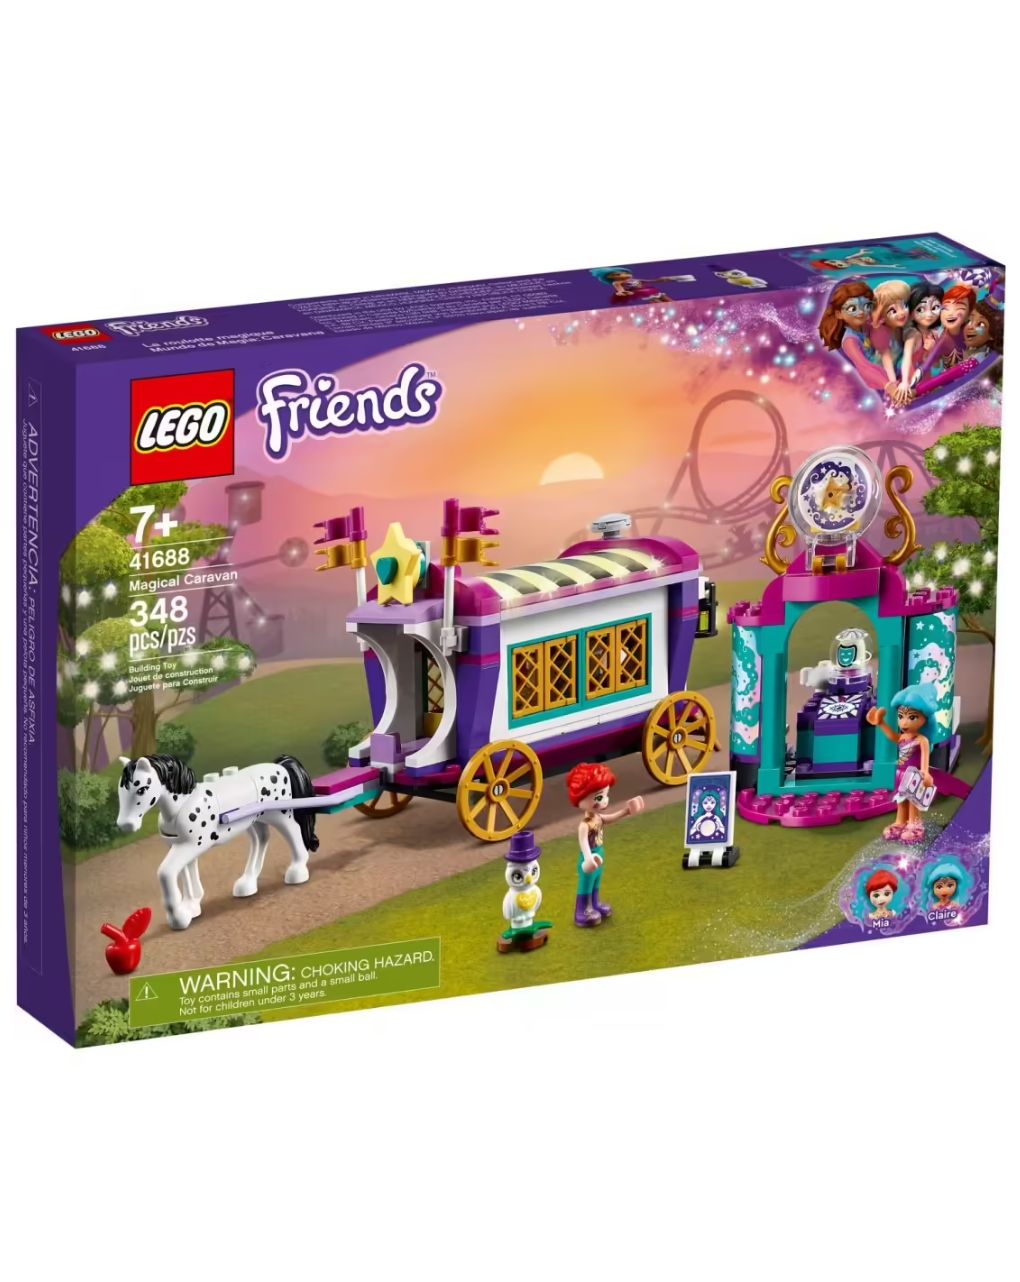 Lego friends μαγικό τροχόσπιτο  41688 - Lego, Lego Friends